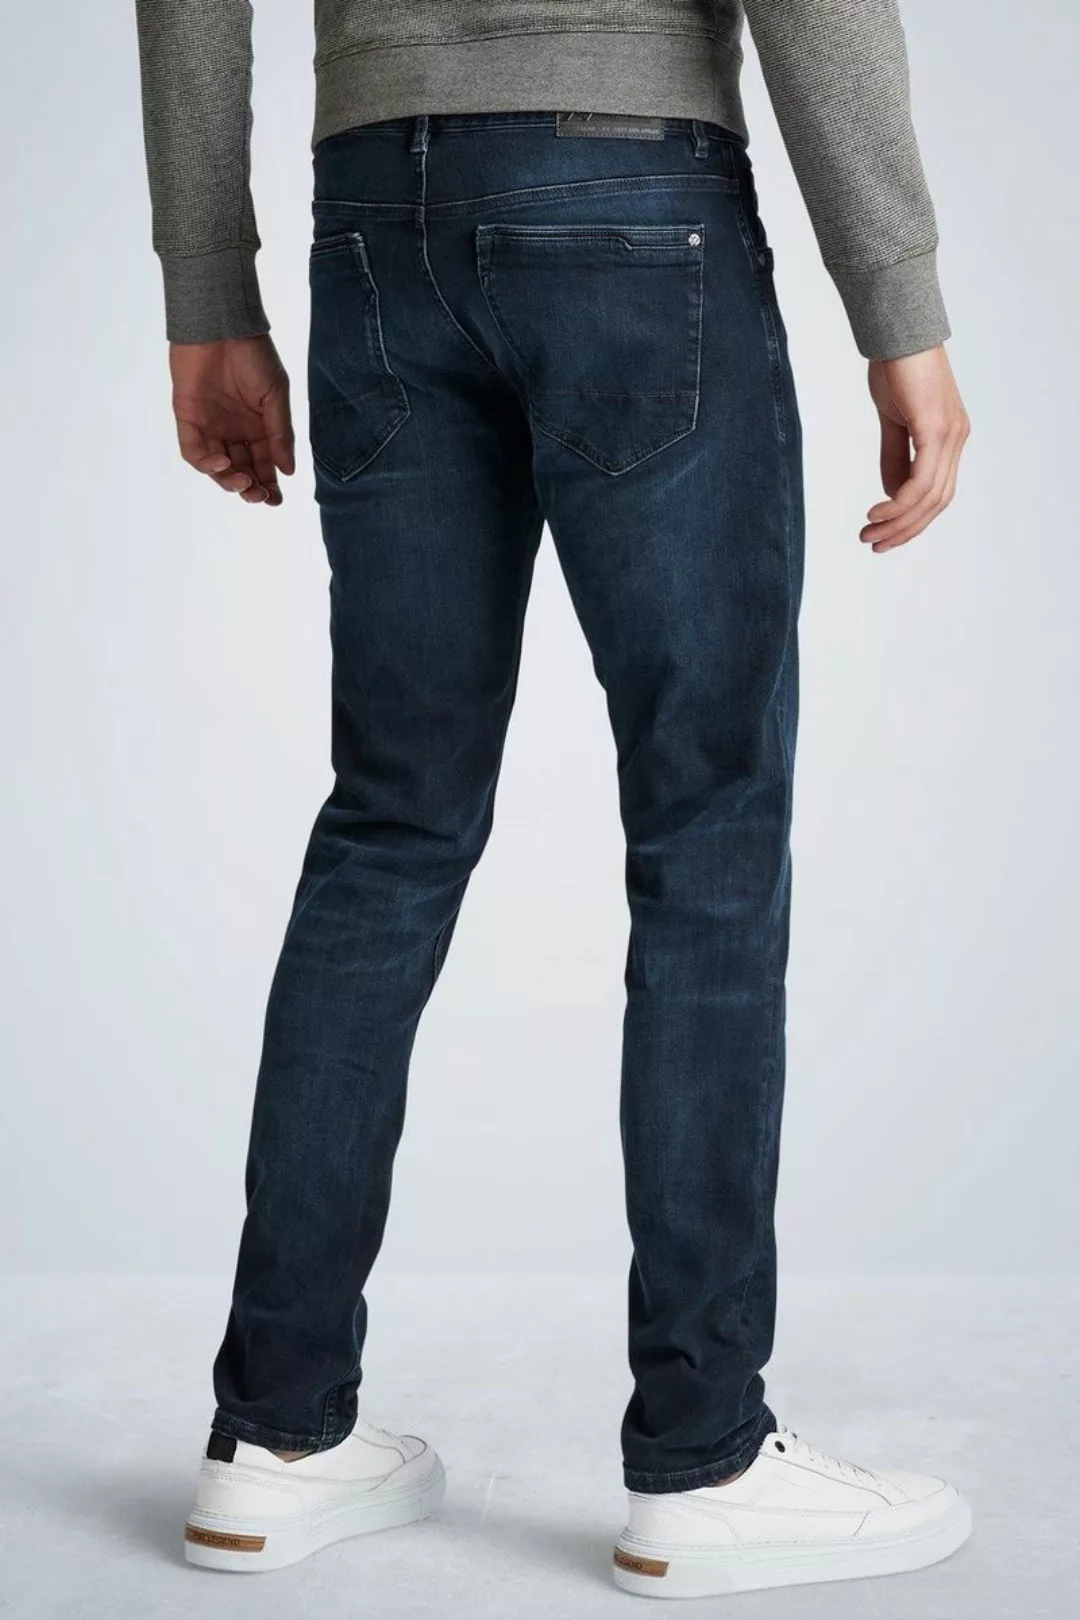 PME Legend XV Jeans Blue Black PTR150 - Größe W 32 - L 38 günstig online kaufen